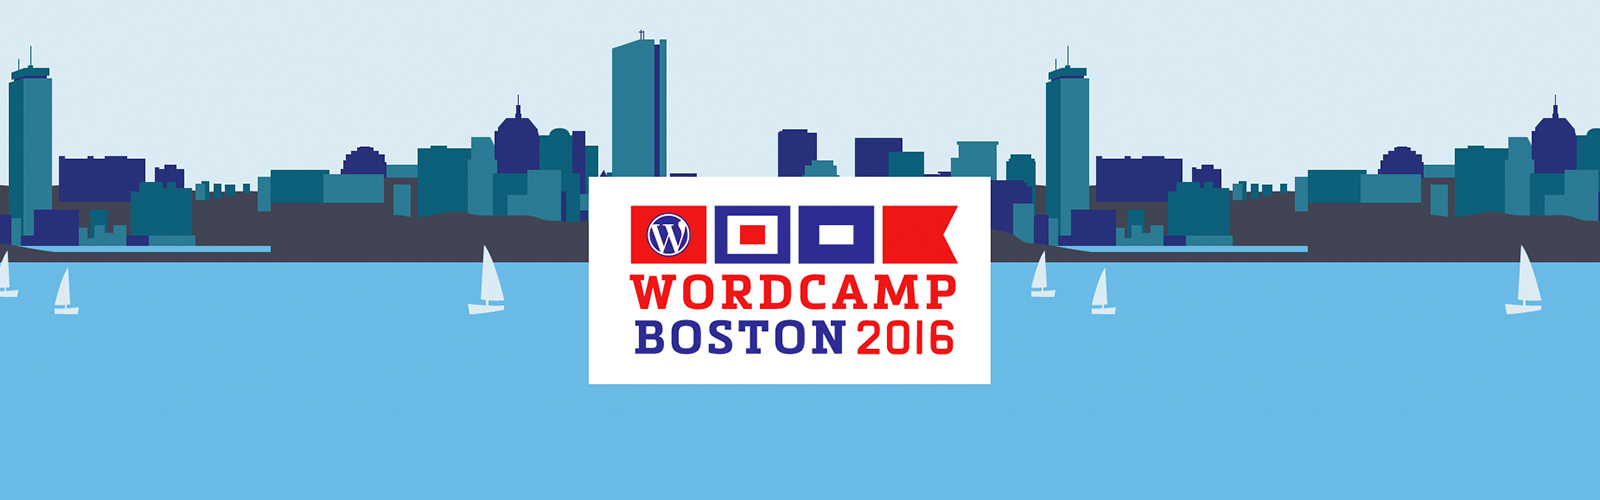 WordCamp Boston 2016